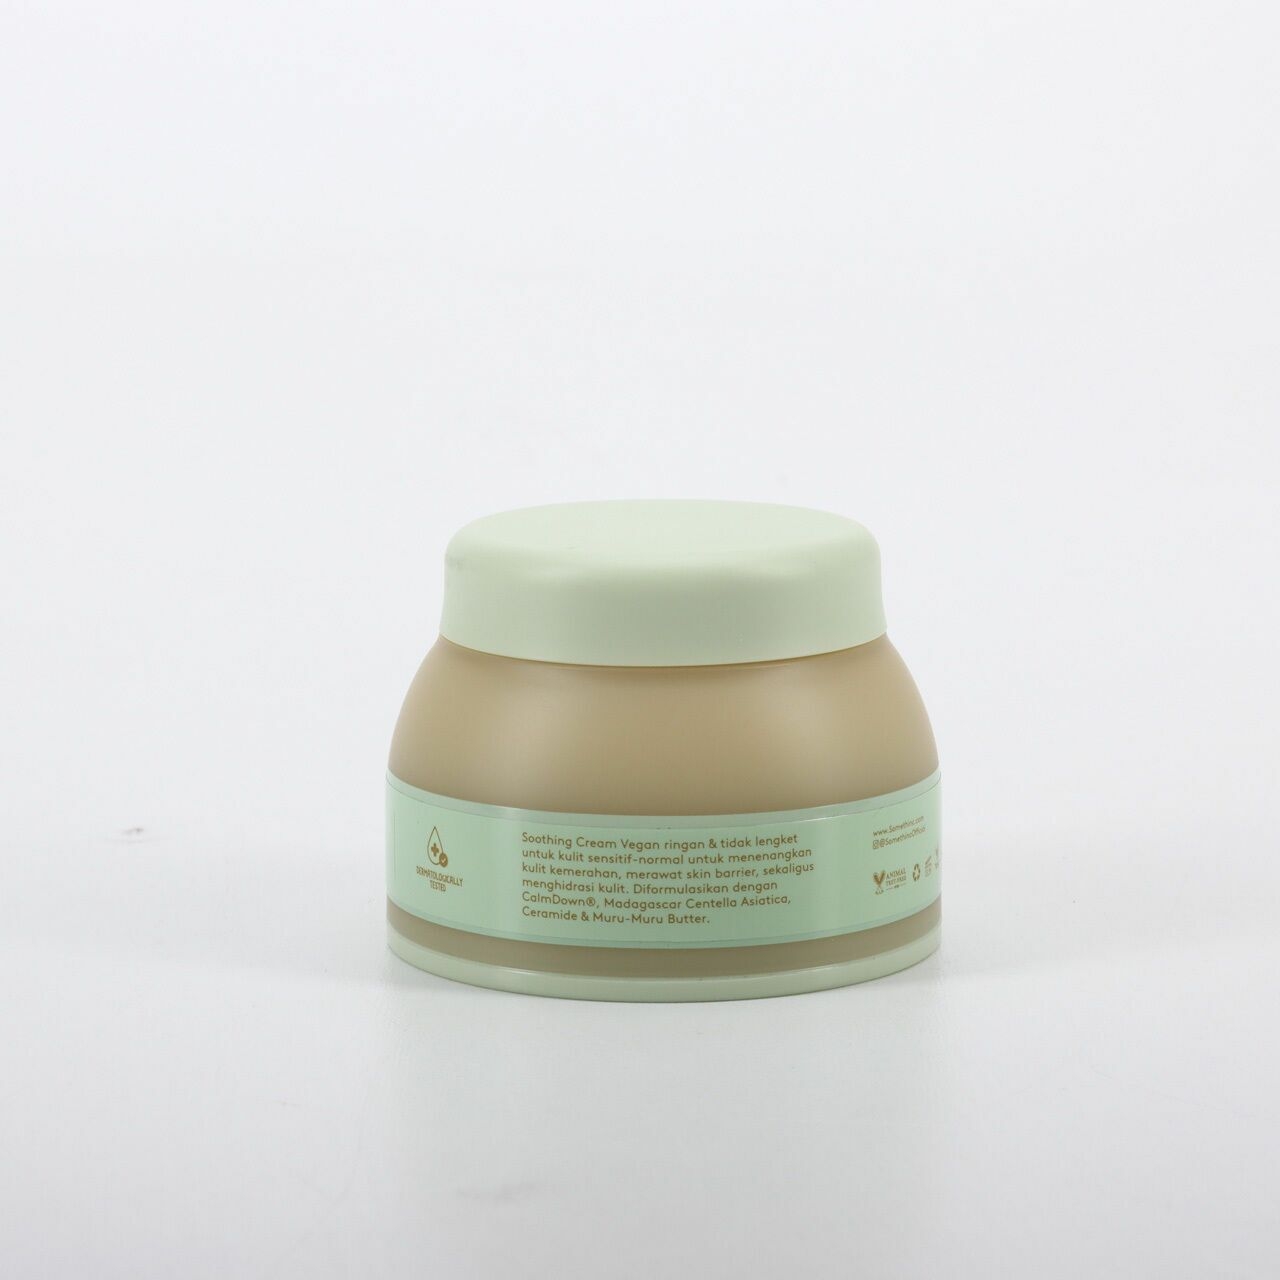 Somethinc Calm Down! Skinpair R-Cover Cream Calming & Repair Skin Barrier